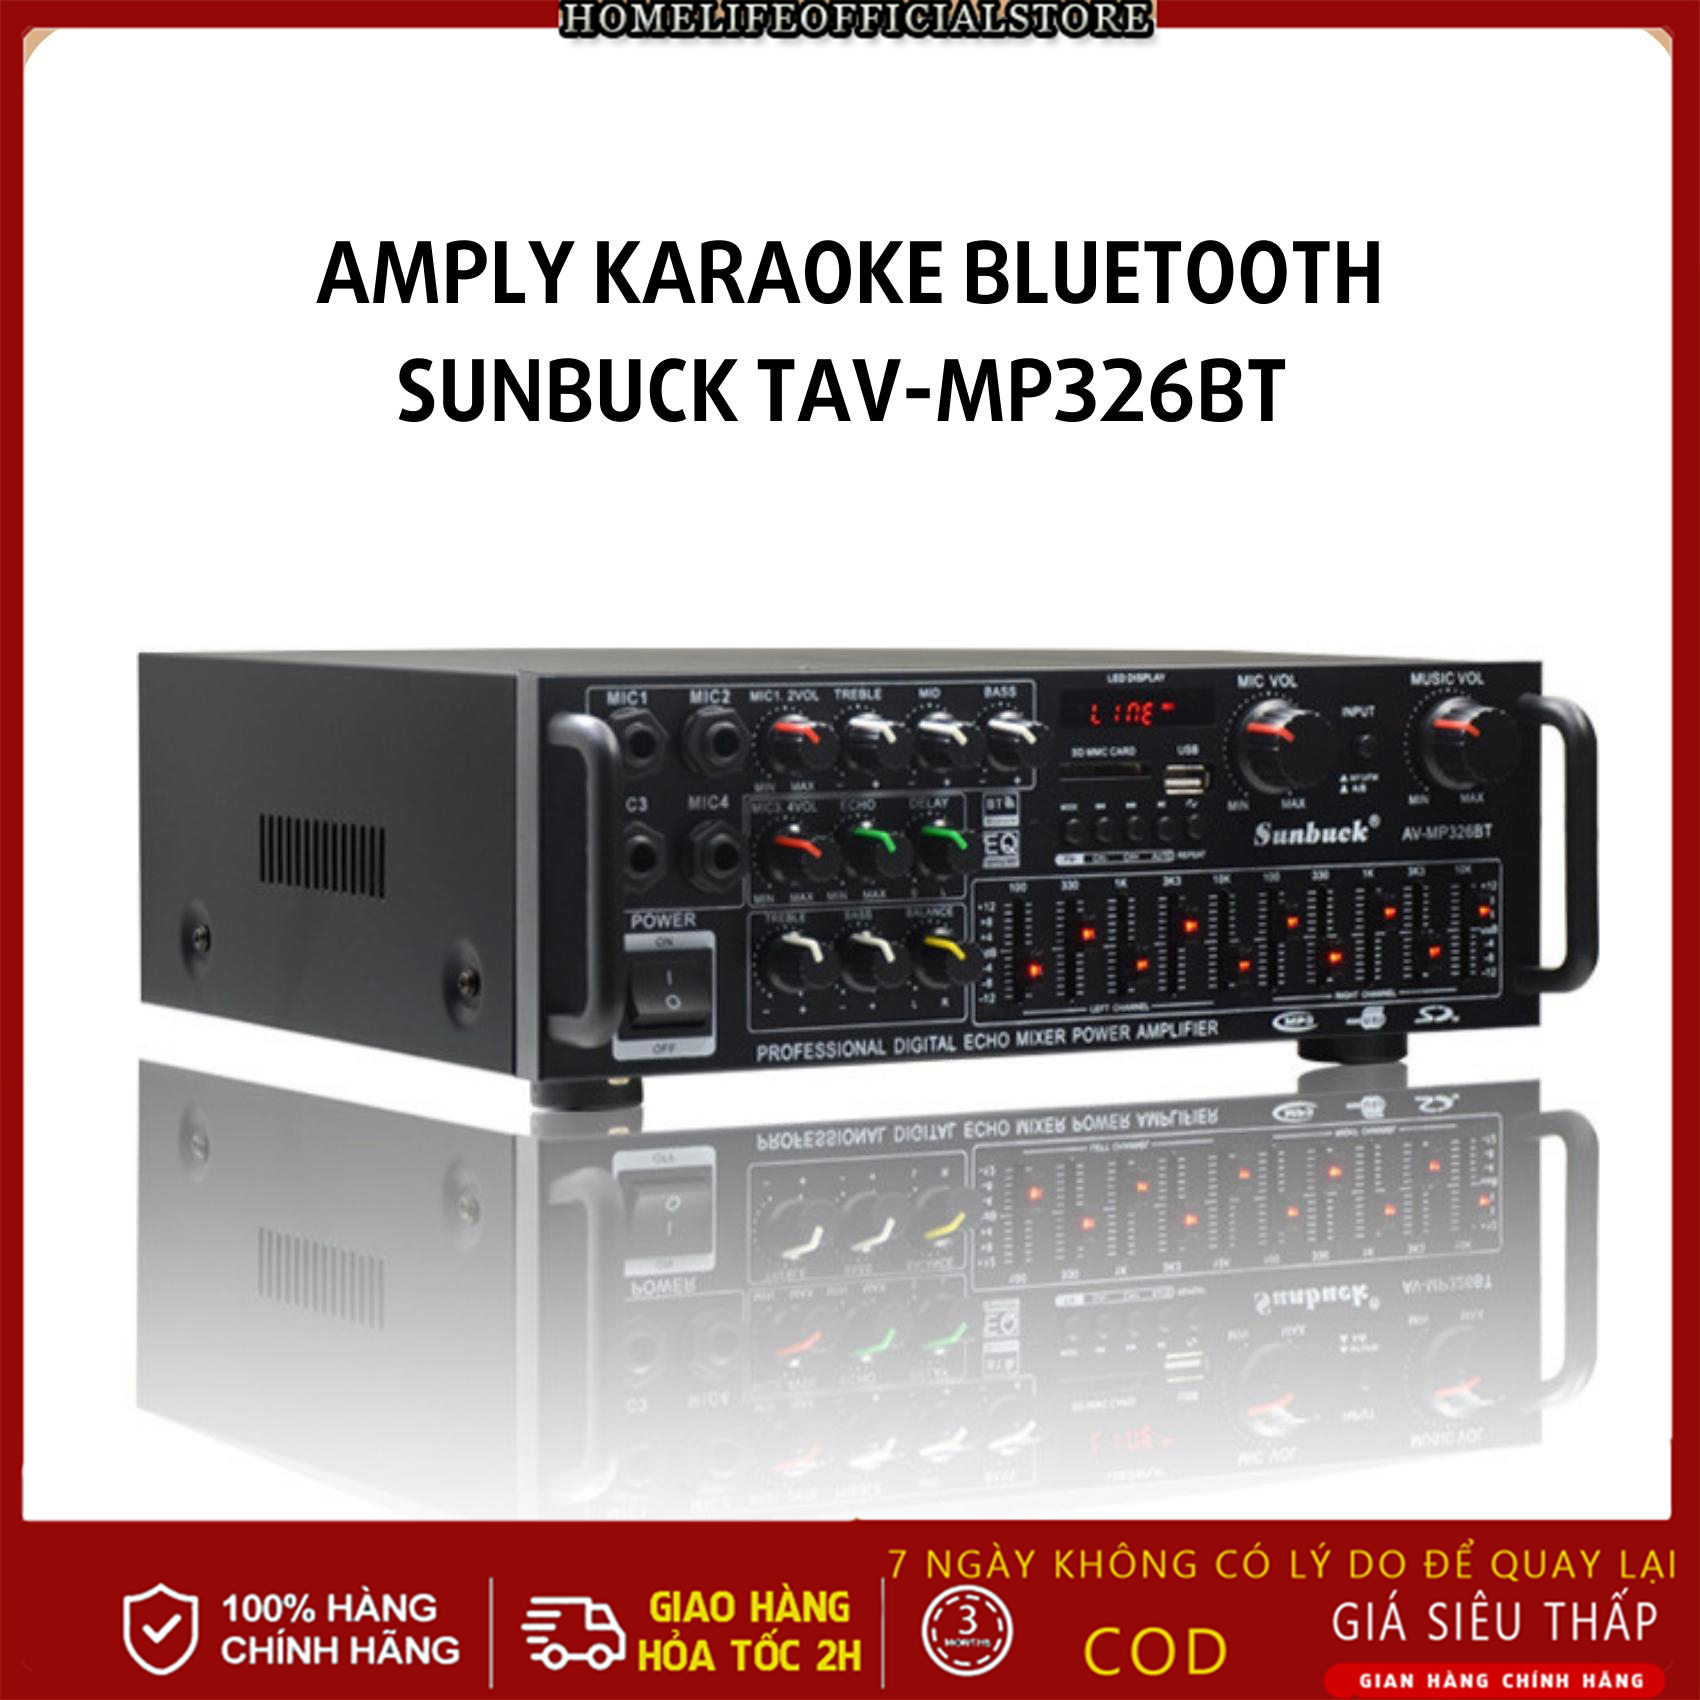 (SALE LỚN) 🐬Amply karaoke bluetooth Sunbuck TAV-MP326BT 220V/12V công suất cực lớn hát karaoke siêu đỉnh hỗ trợ phát nhạc từ USB và thẻ nhớ âm ly trên xe hơi âm ly du lịch nhỏ gọn đa năng amly karaoke gia đình